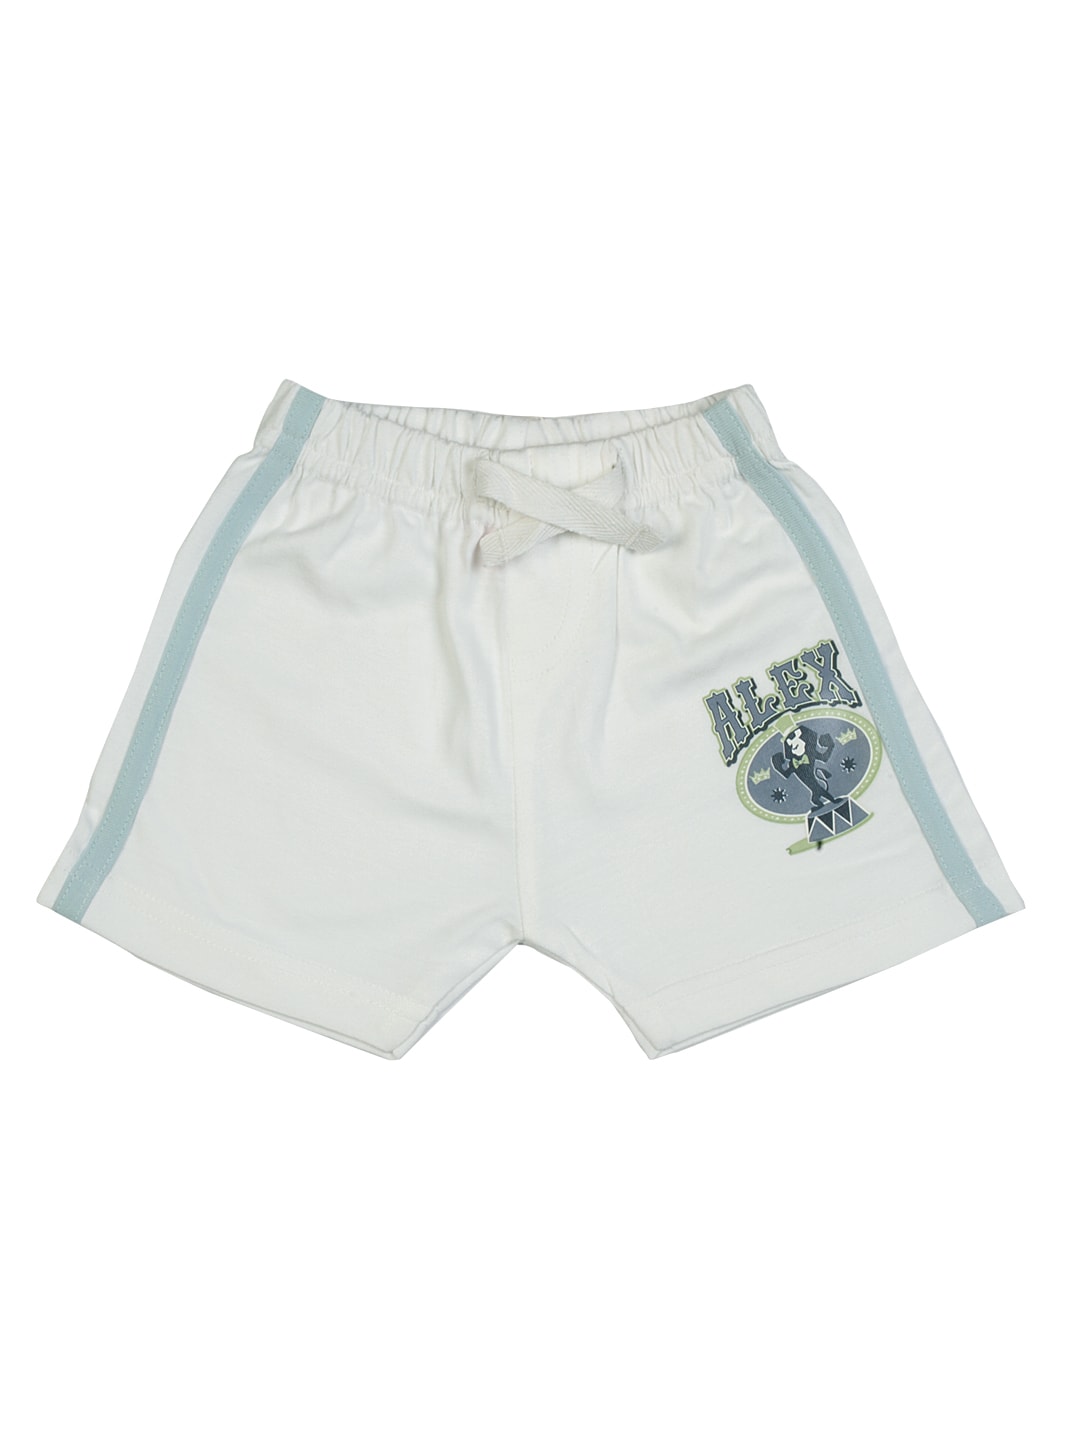 Madagascar3 Infant Boys White Shorts